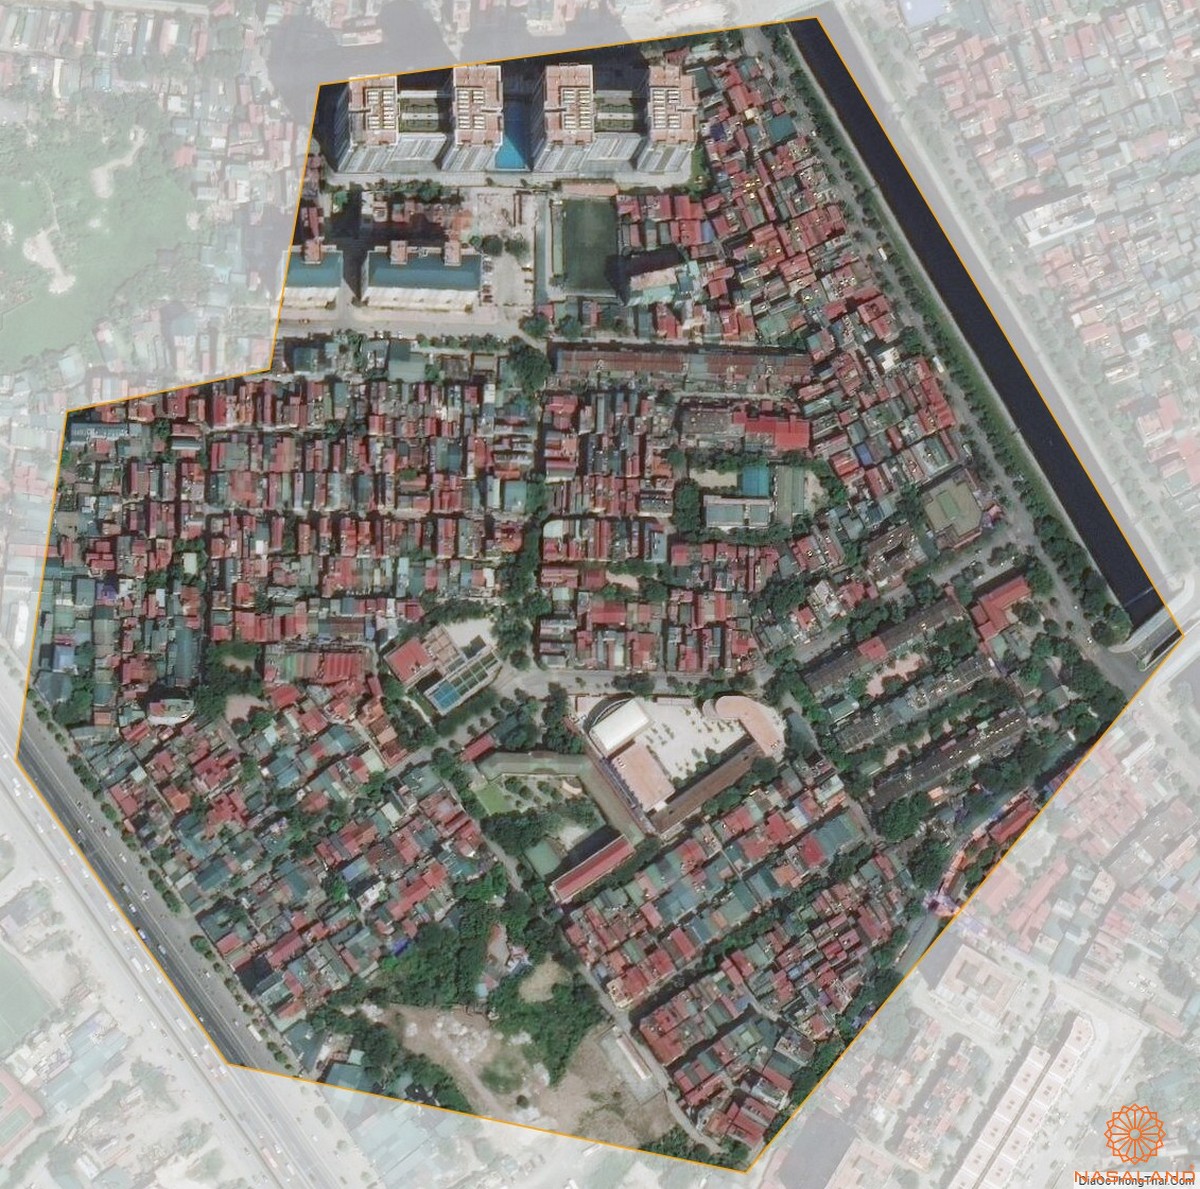 Quy hoạch sử dụng đất Phường Kim Giang Quận Thanh Xuân thể hiện trên bản đồ quy hoạch phân khu tỷ lệ 1/2000 của Thành phố Hà Nội